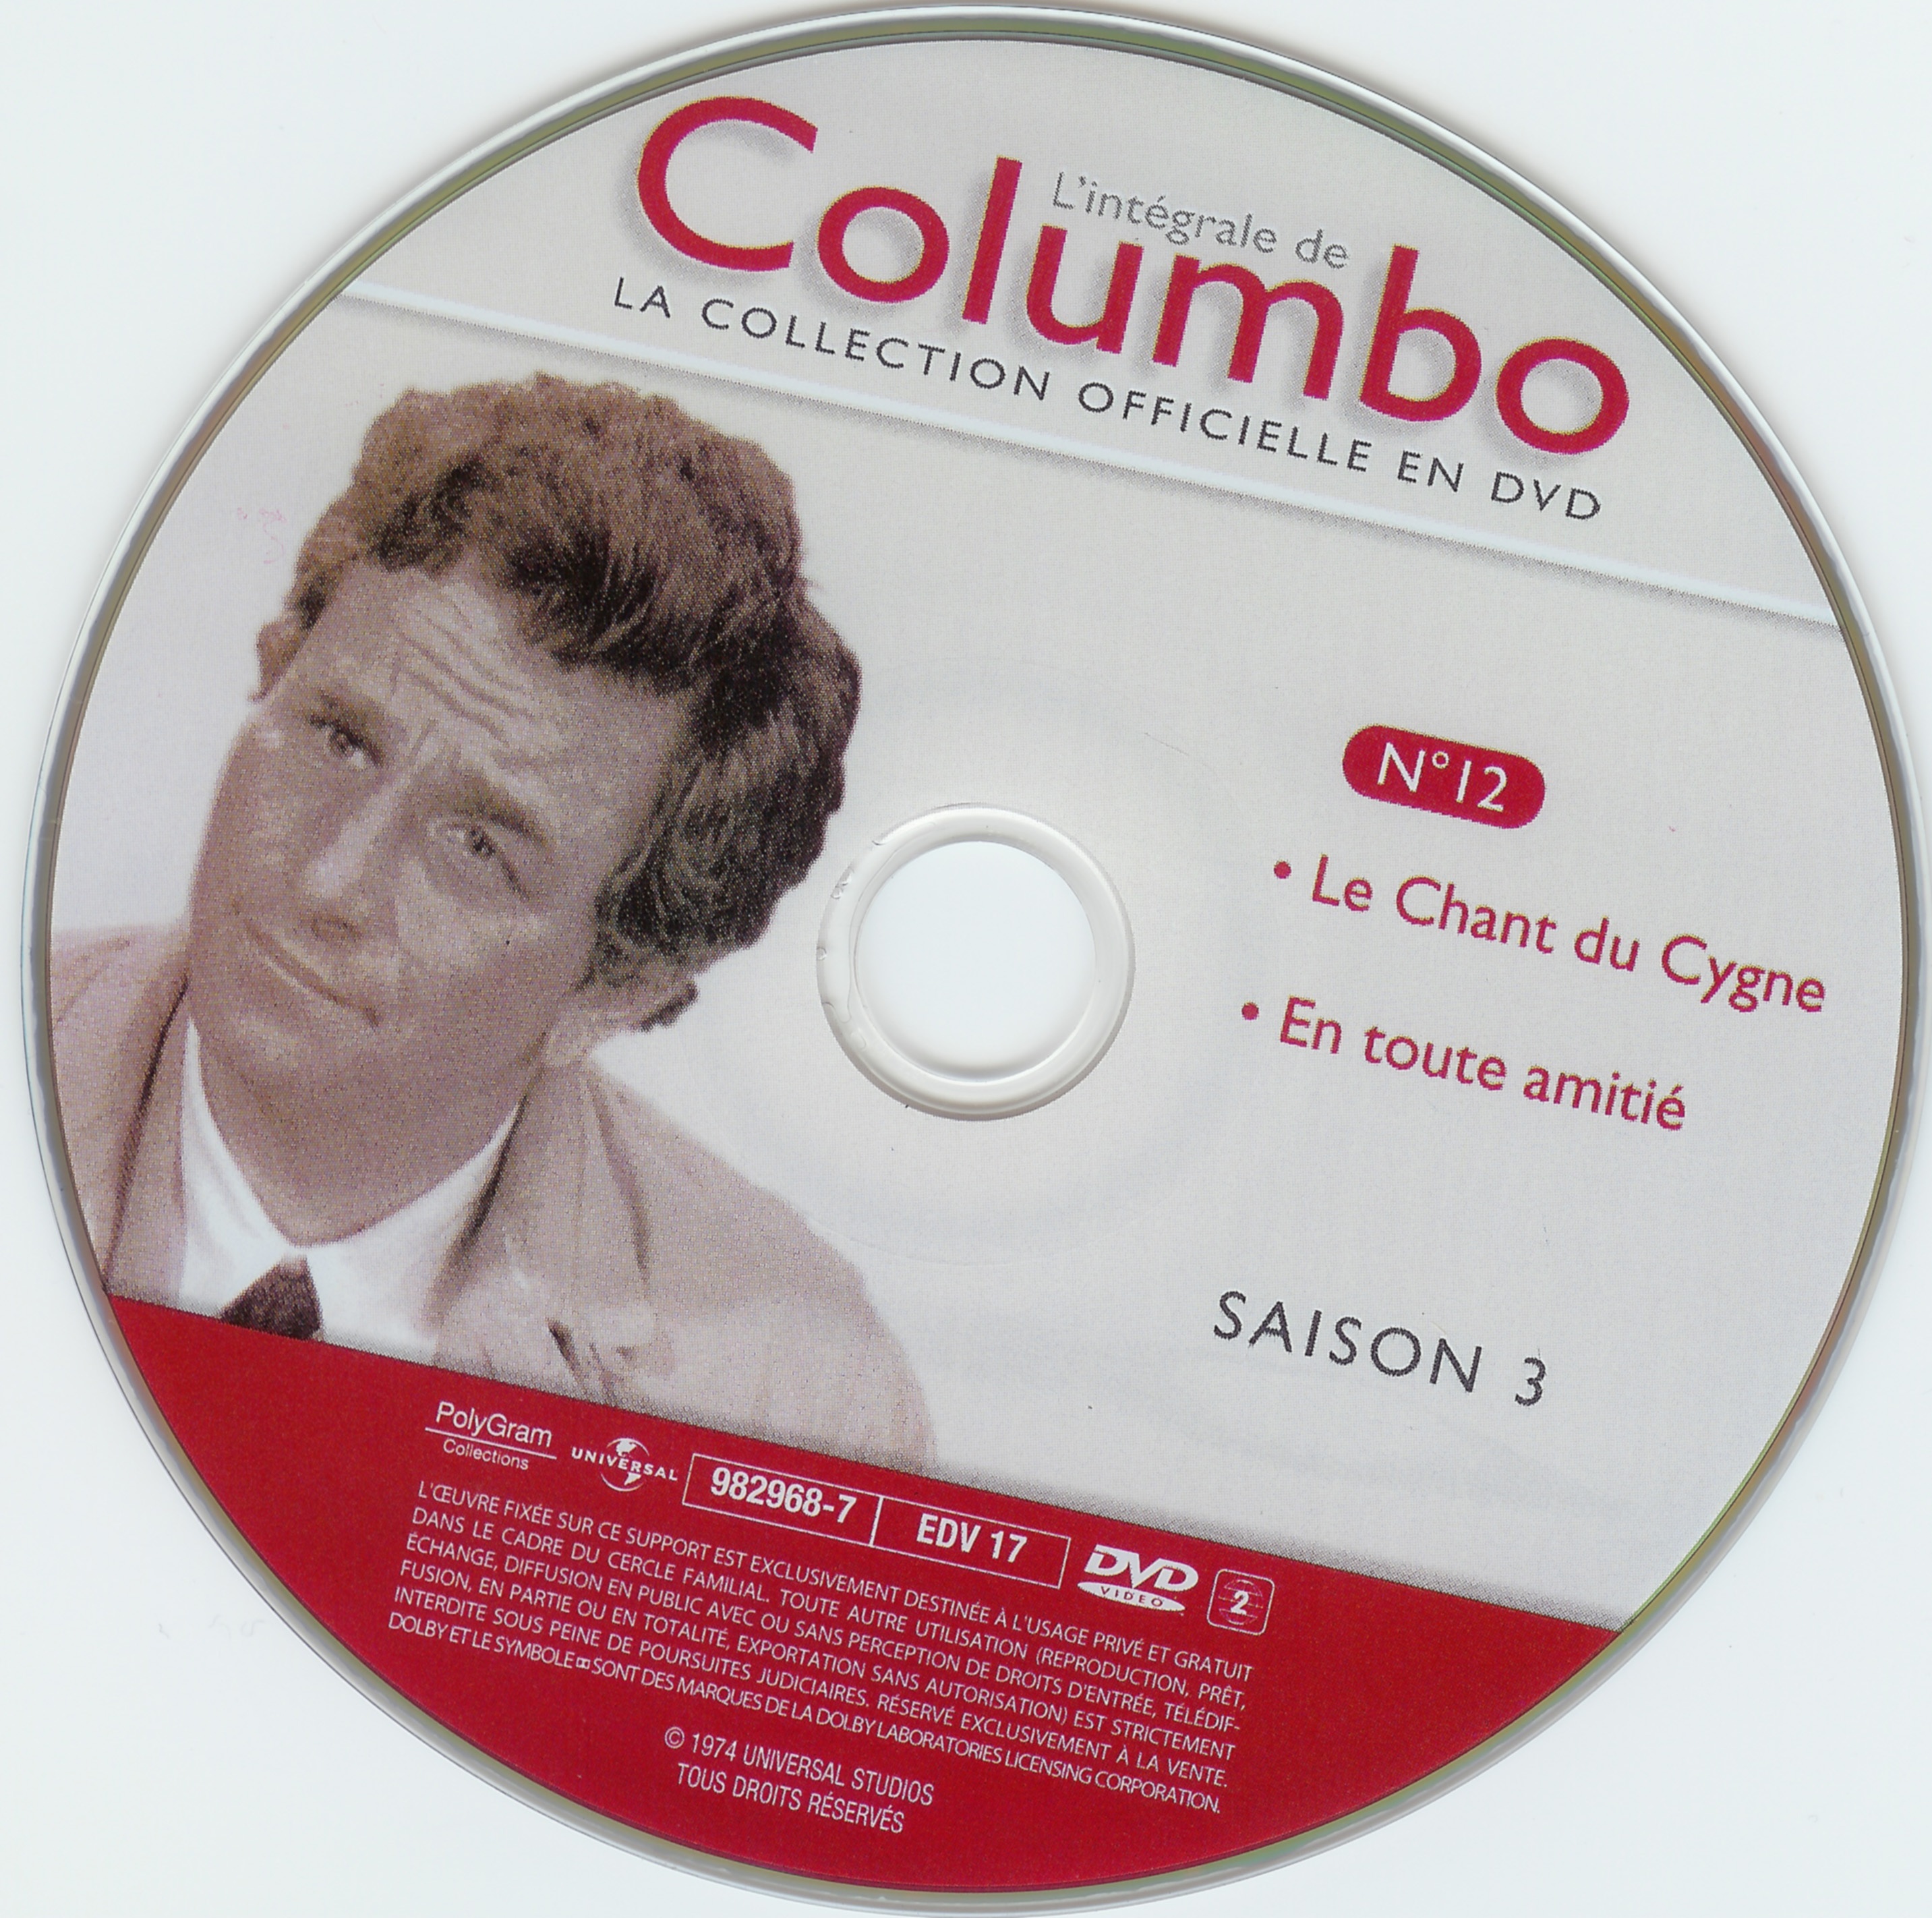 Columbo saison 3 vol 12